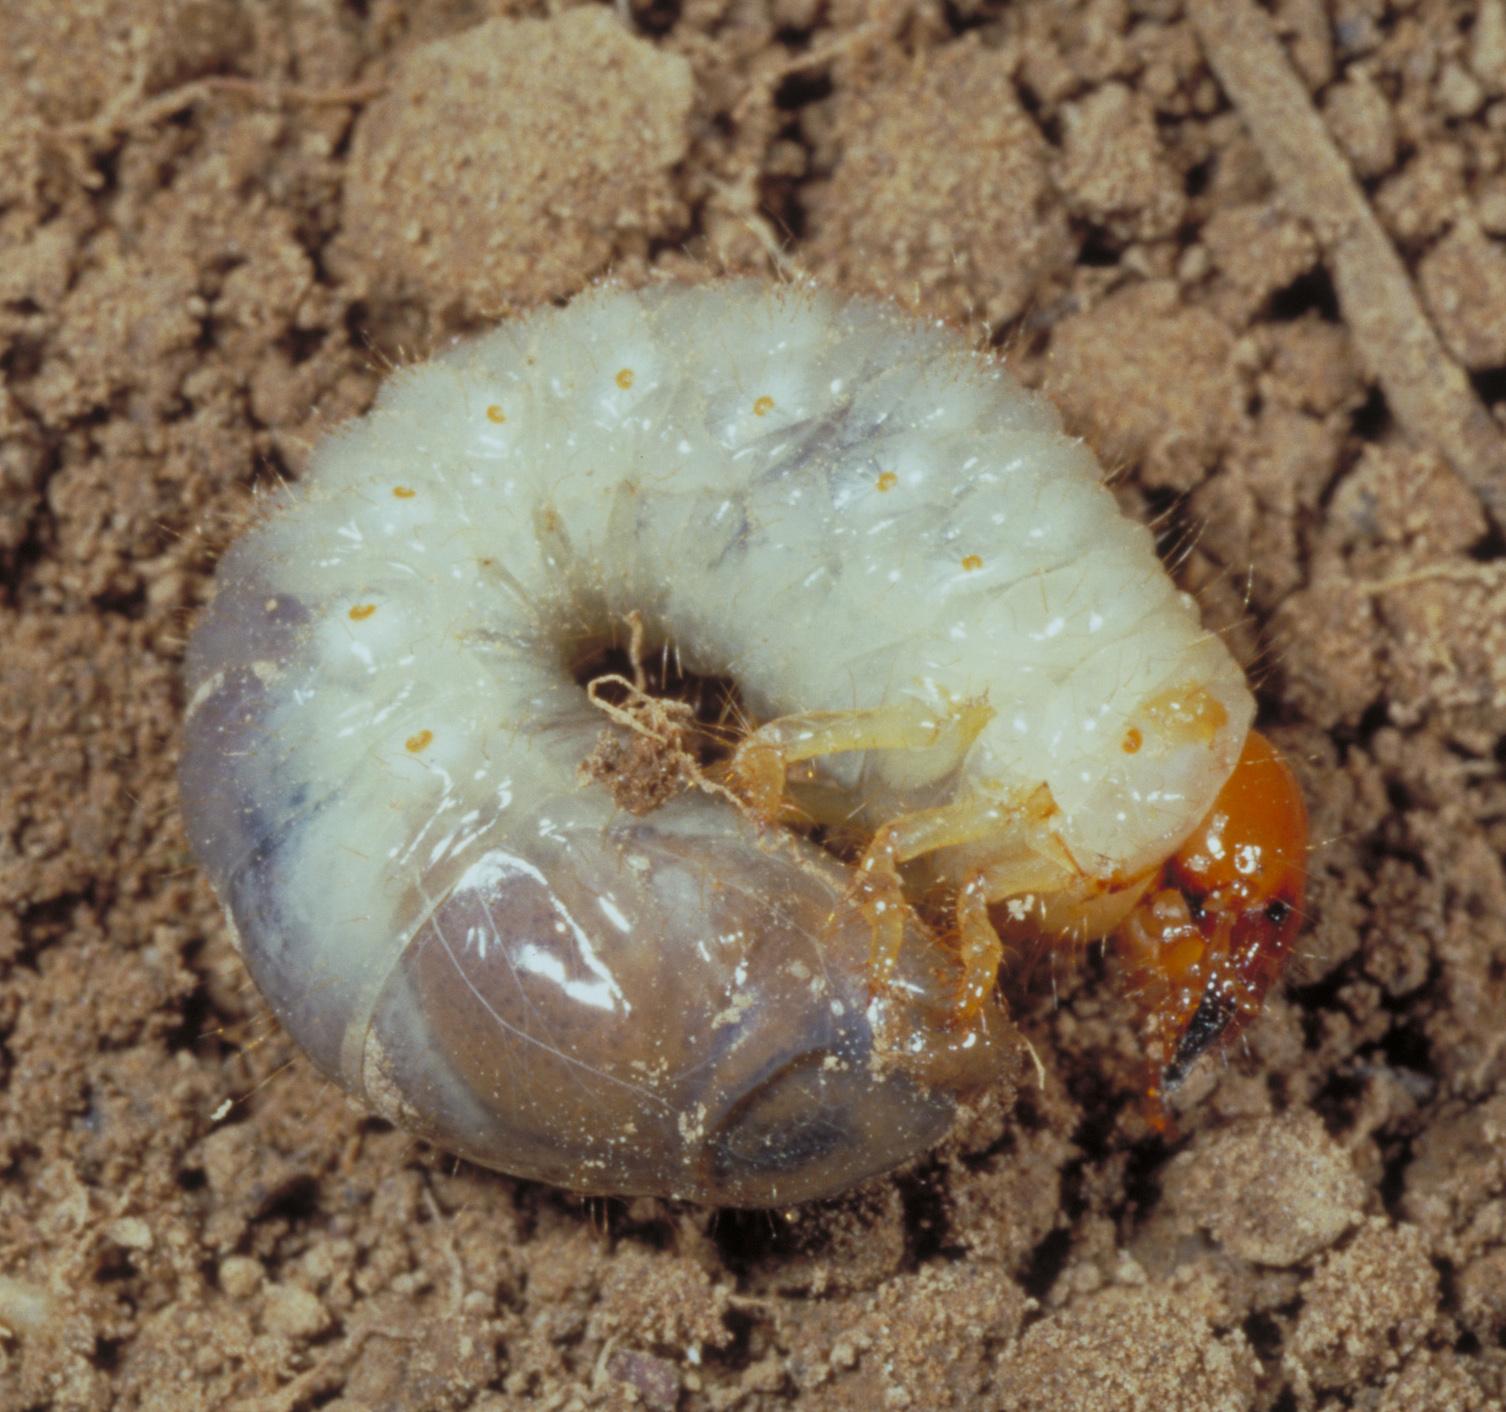 Japanese beetle larva (grub). 